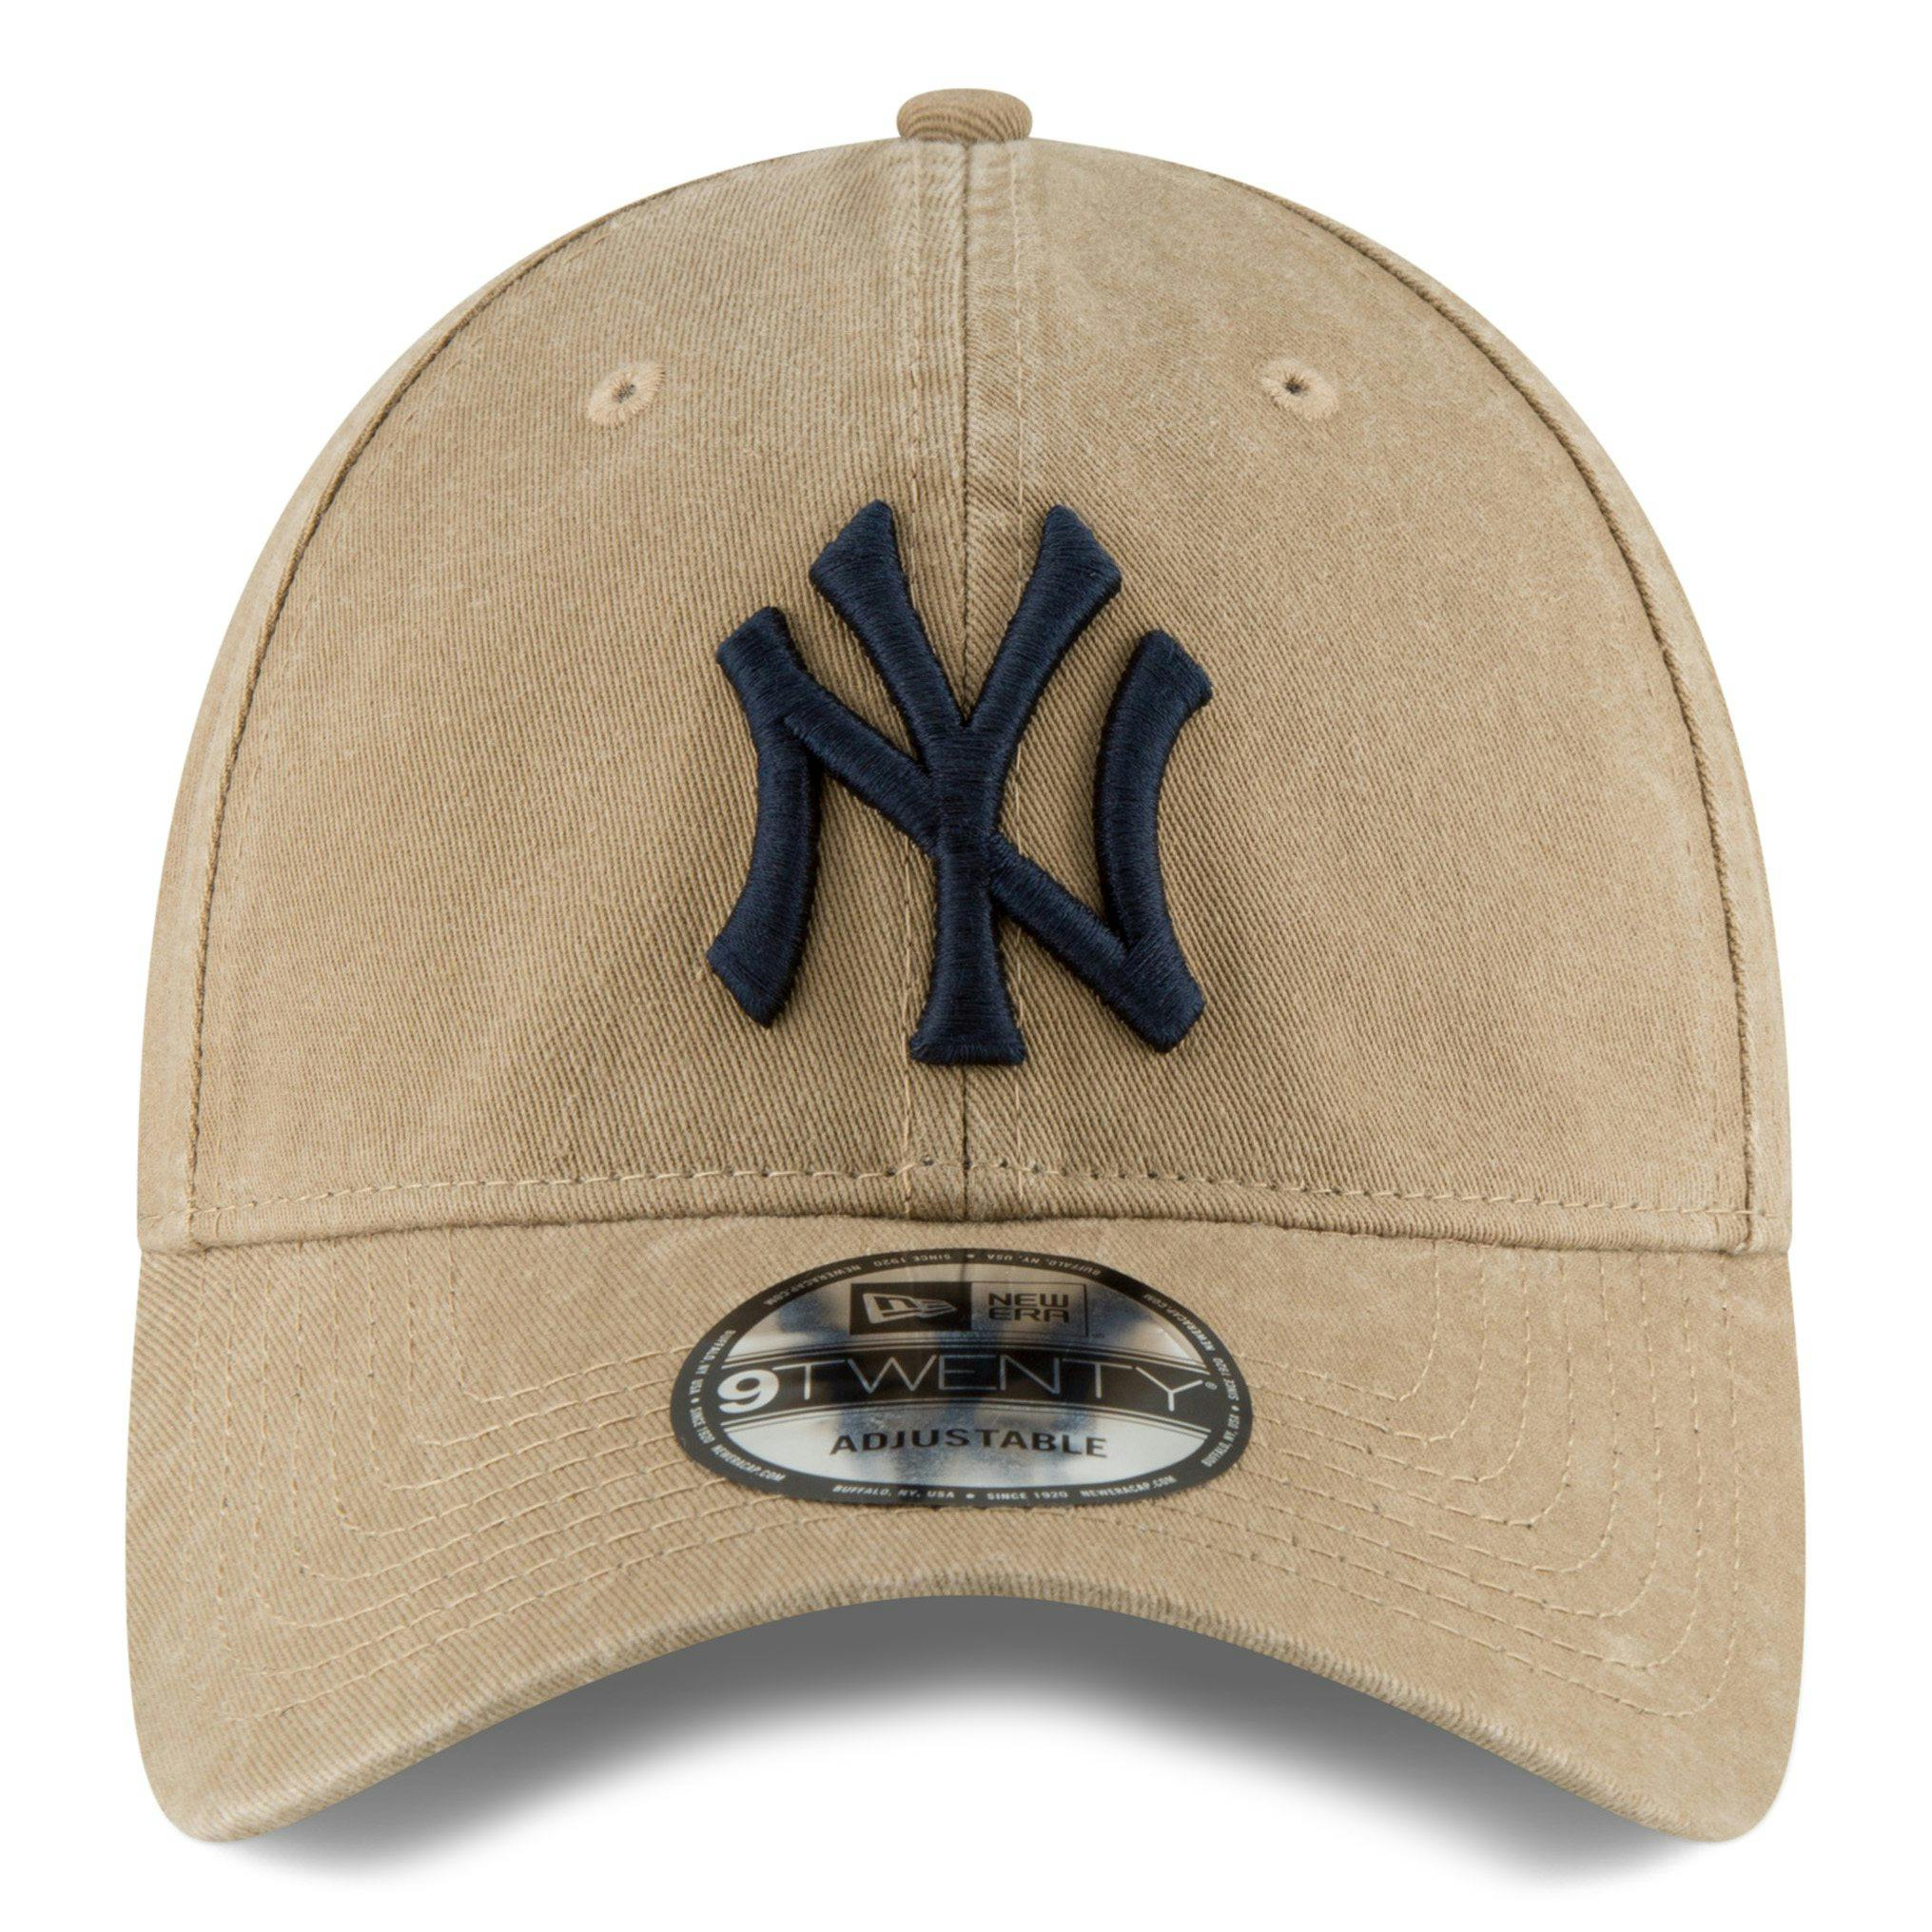 New Era New York Yankees MLB Trucker Hat